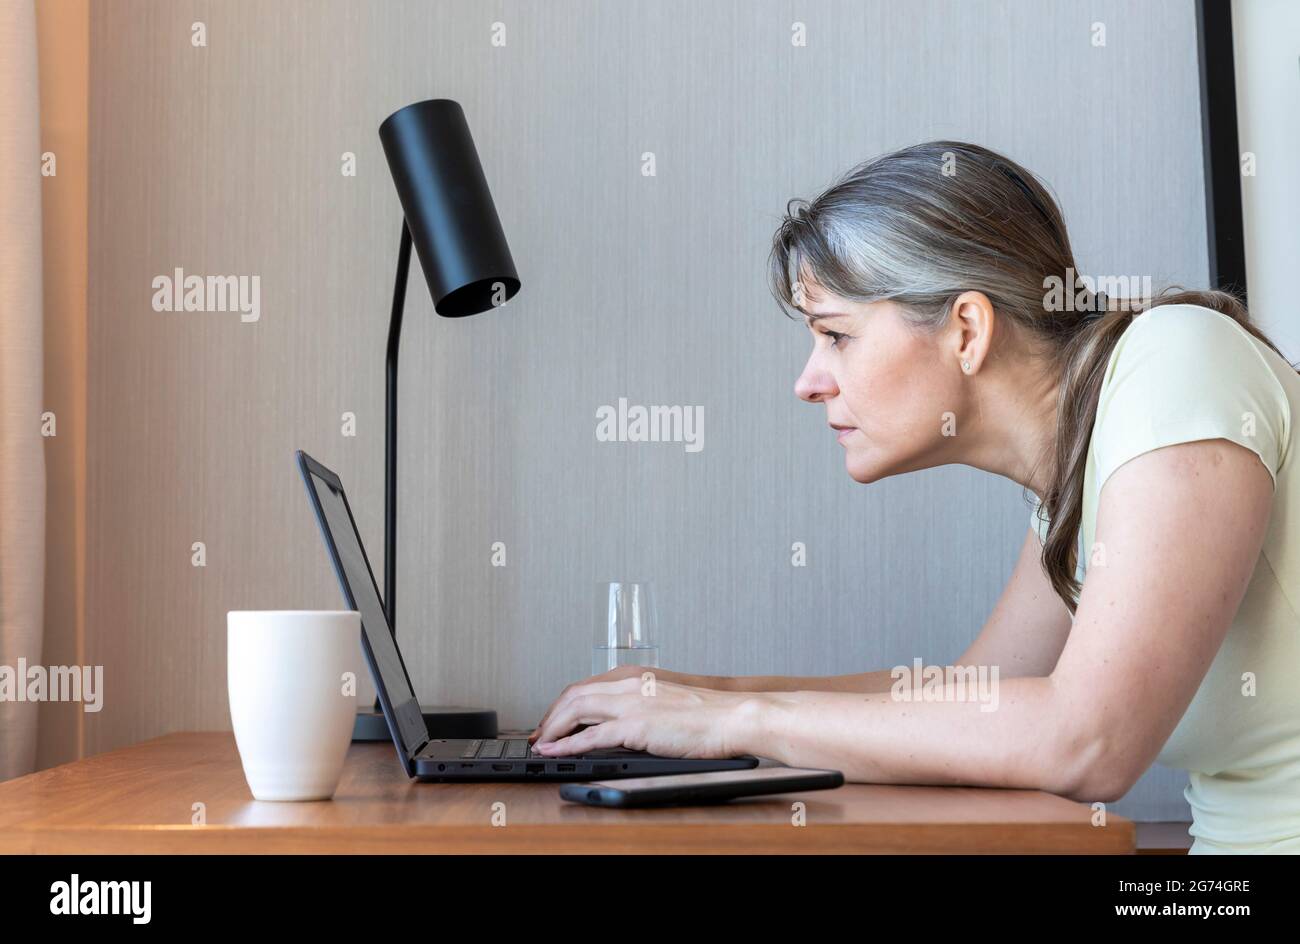 Femme avec une mauvaise vue travaillant dans son ordinateur portable, luttant pour voir Banque D'Images